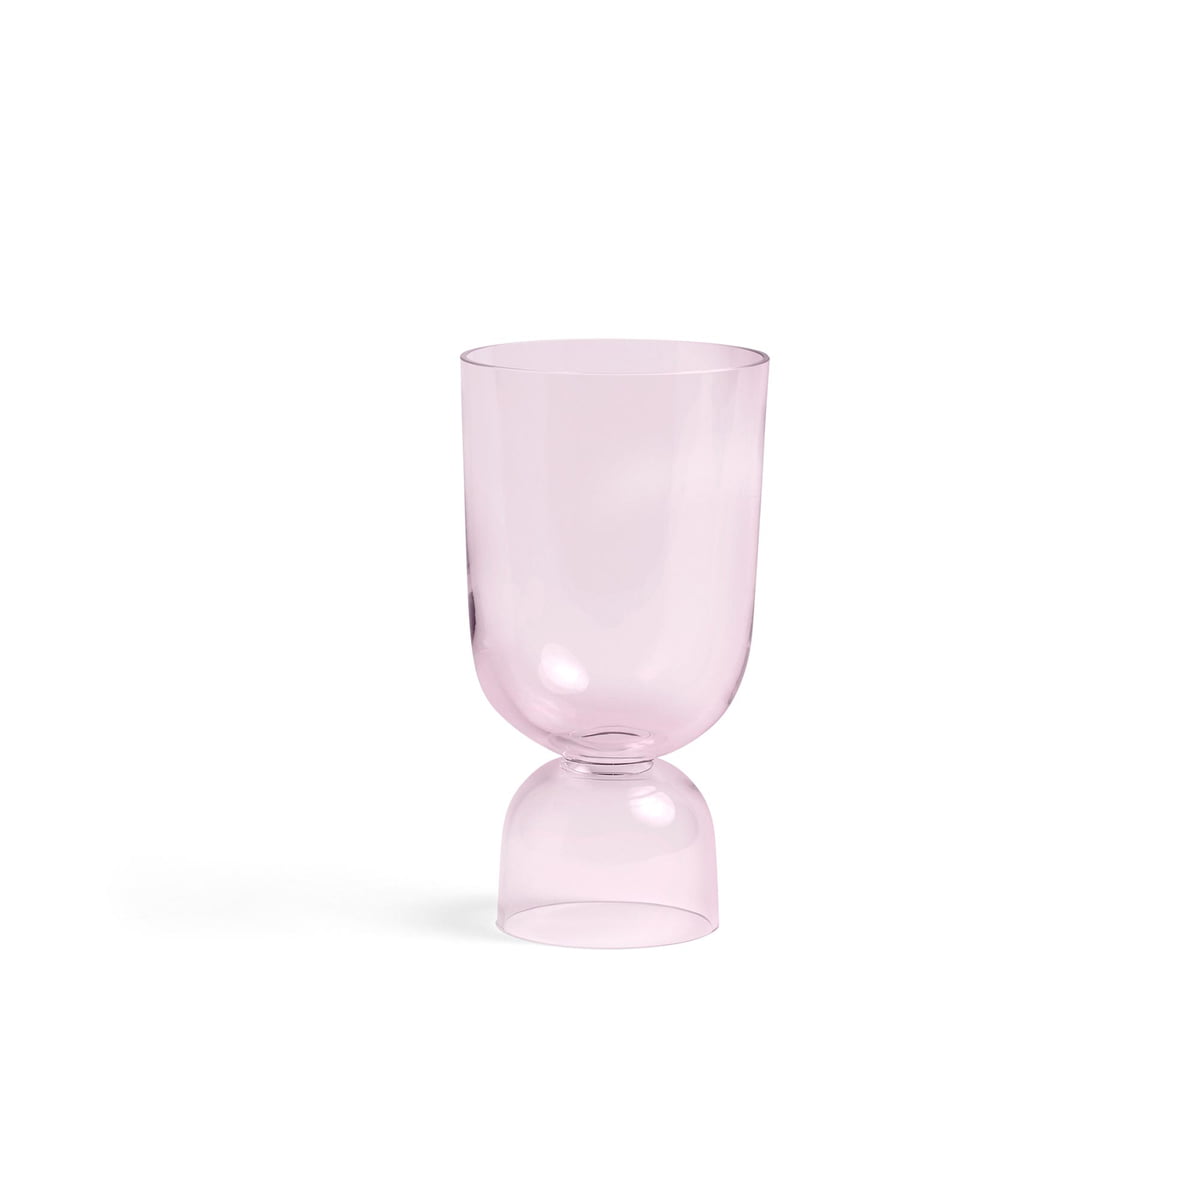 HAY - Bottoms Up Vase S